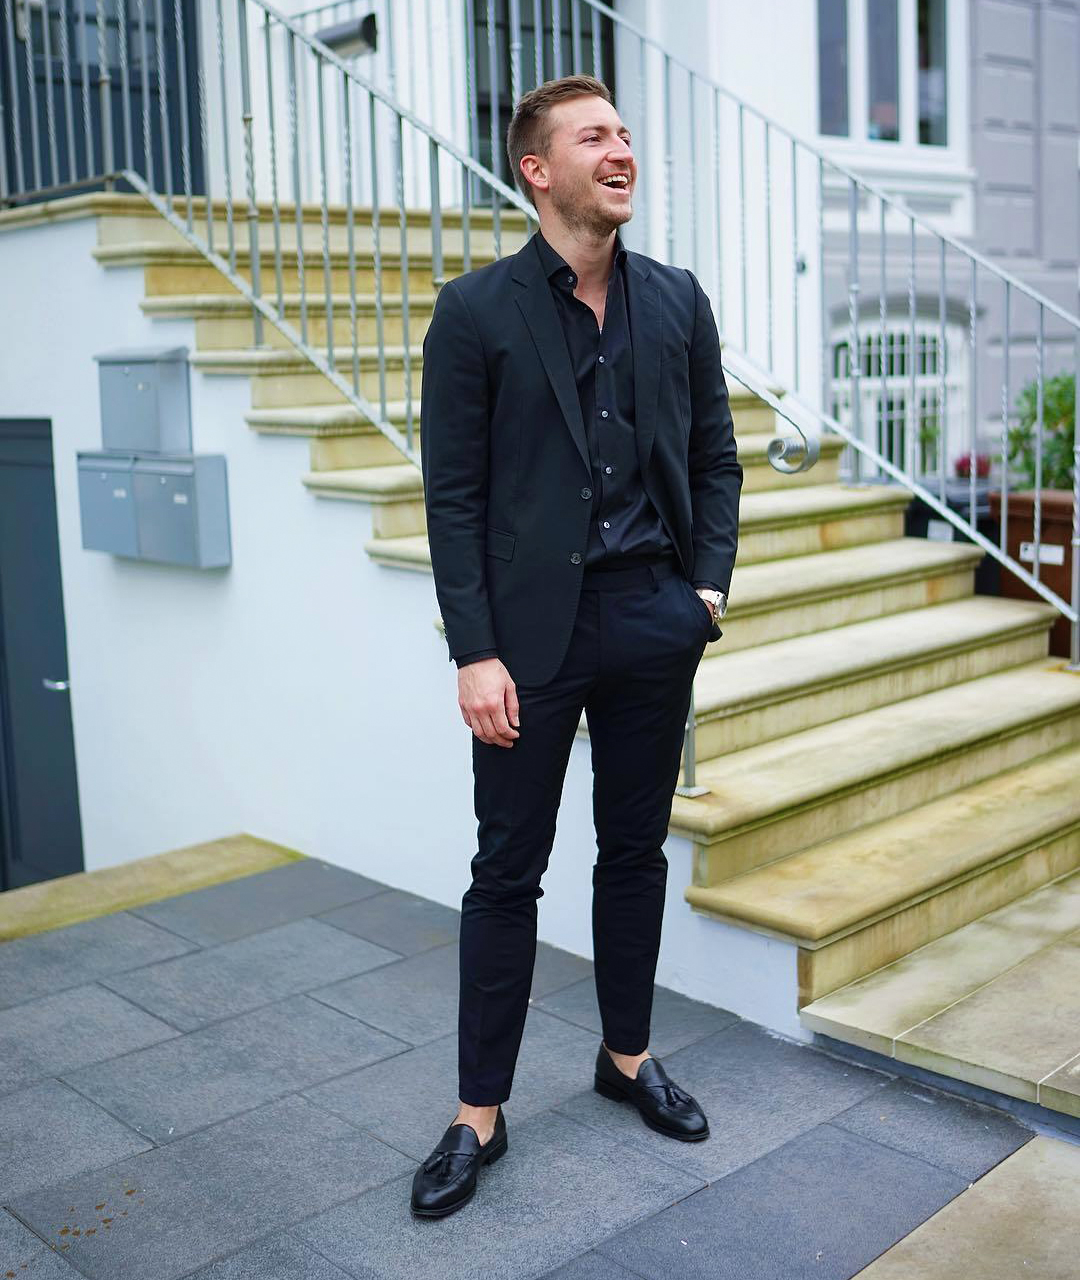 How to Wear a Men’s Black Dress Shirt - Suits Expert